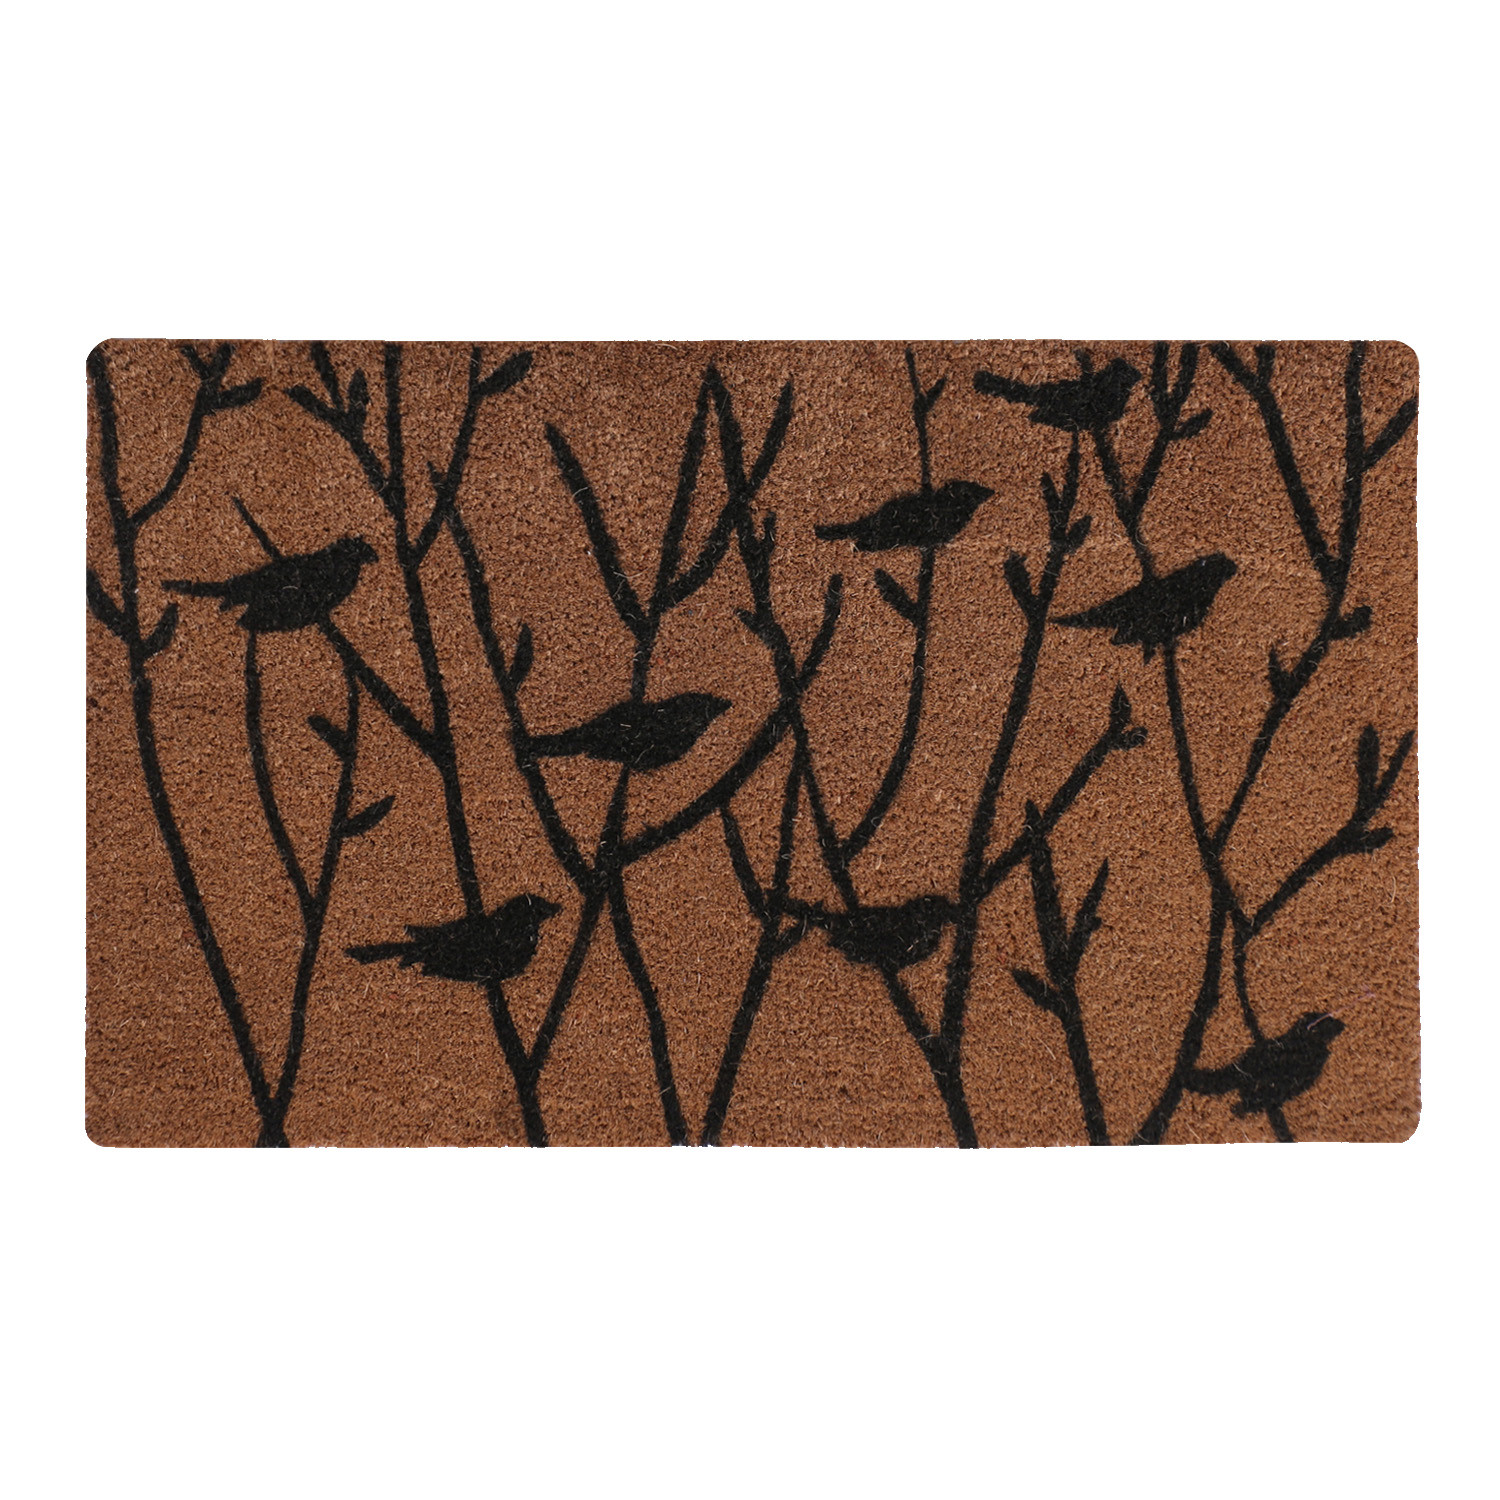 Kuber Industries Door Mat|Polyethylene Durable & Anti-Slip Natural Birds Print Floor Mat|Rug For Indoor or Outdoor, 30x20 Inch (Brown)